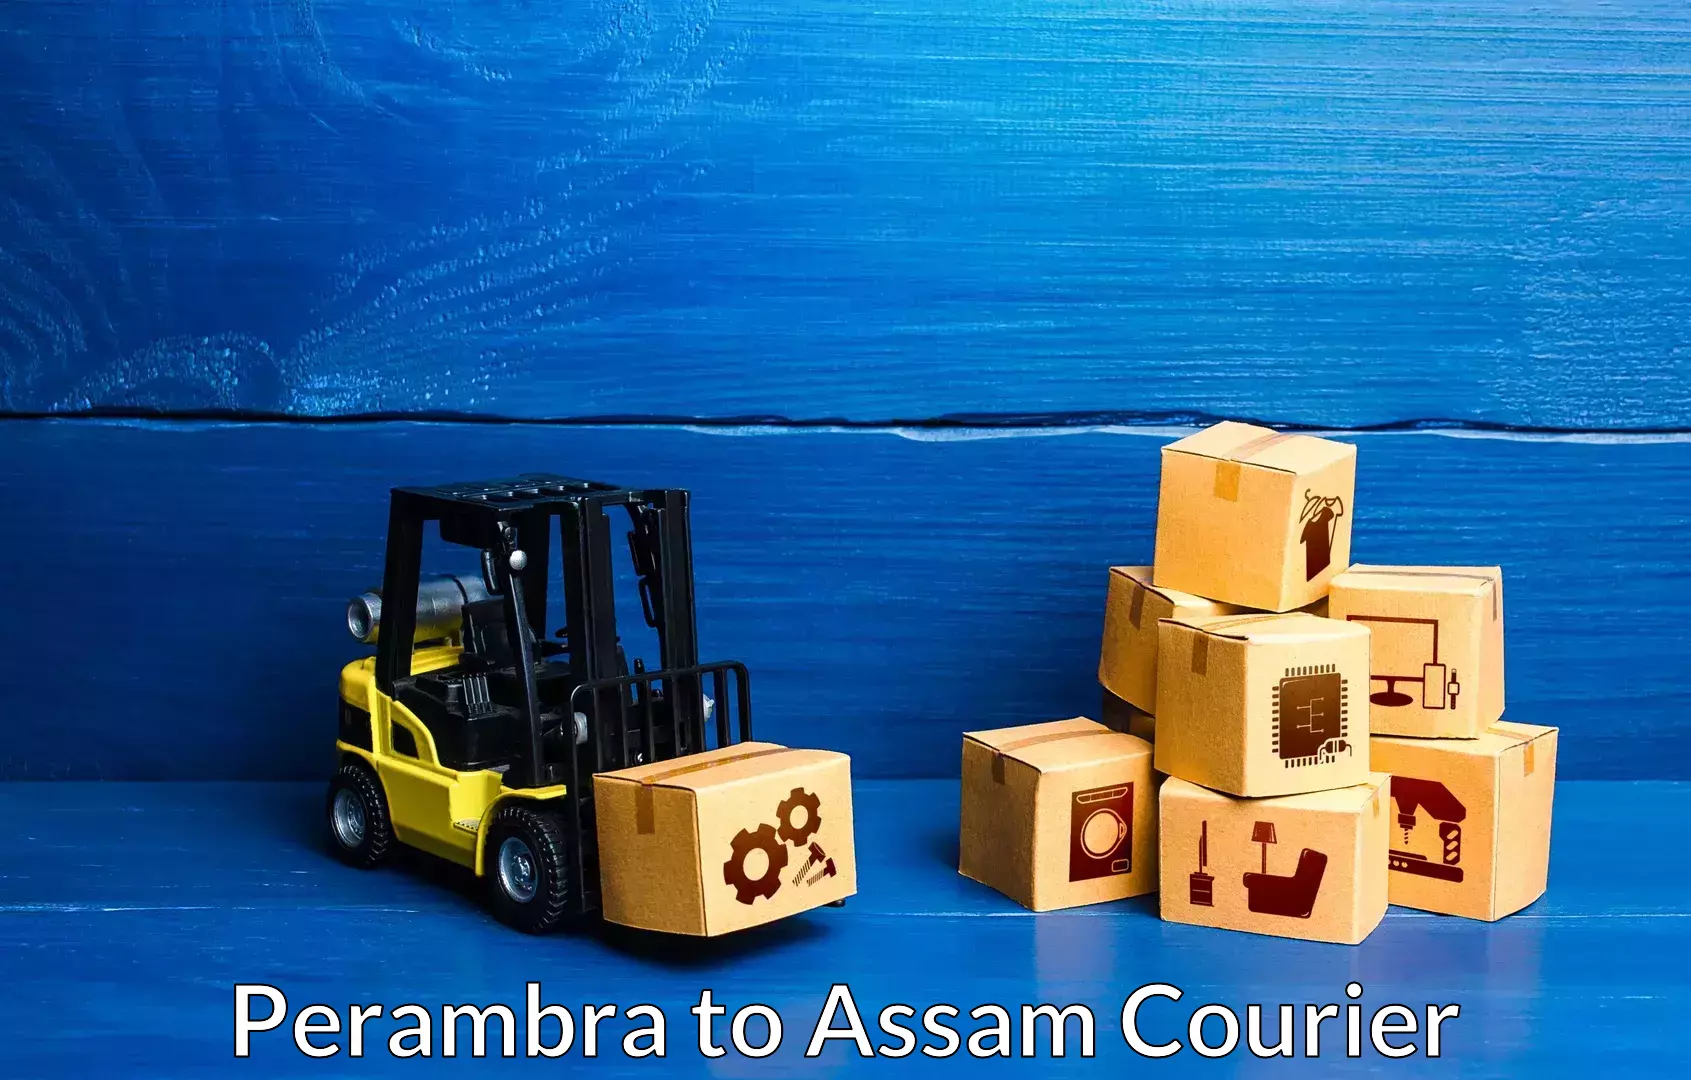 Quality furniture shipping Perambra to IIIT Guwahati